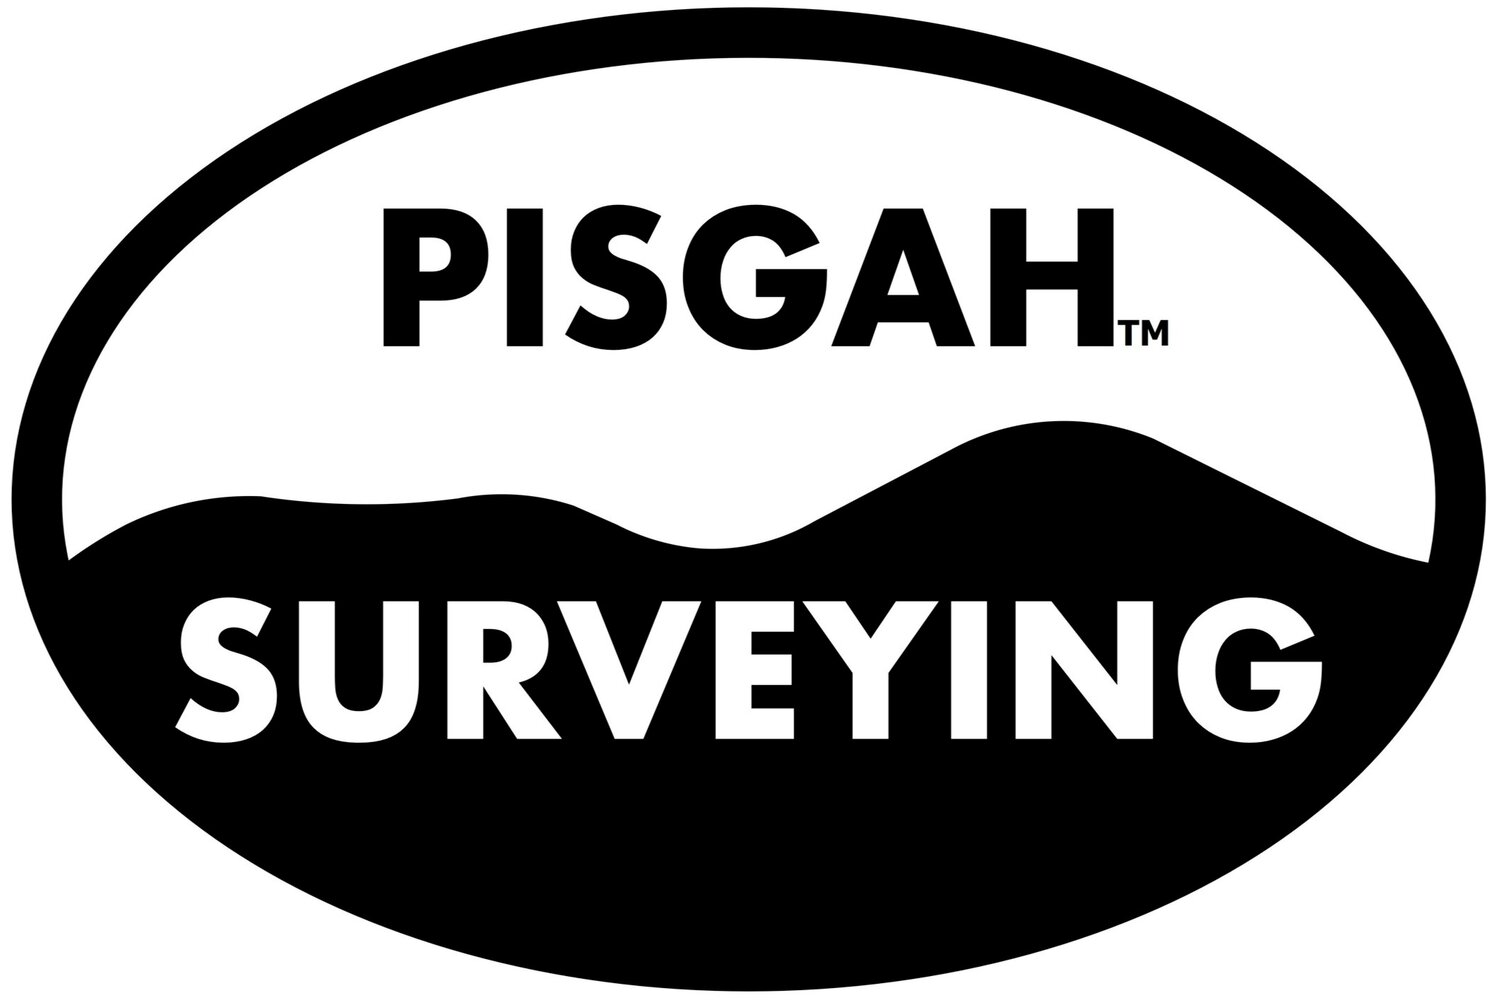 Pisgah Surveying